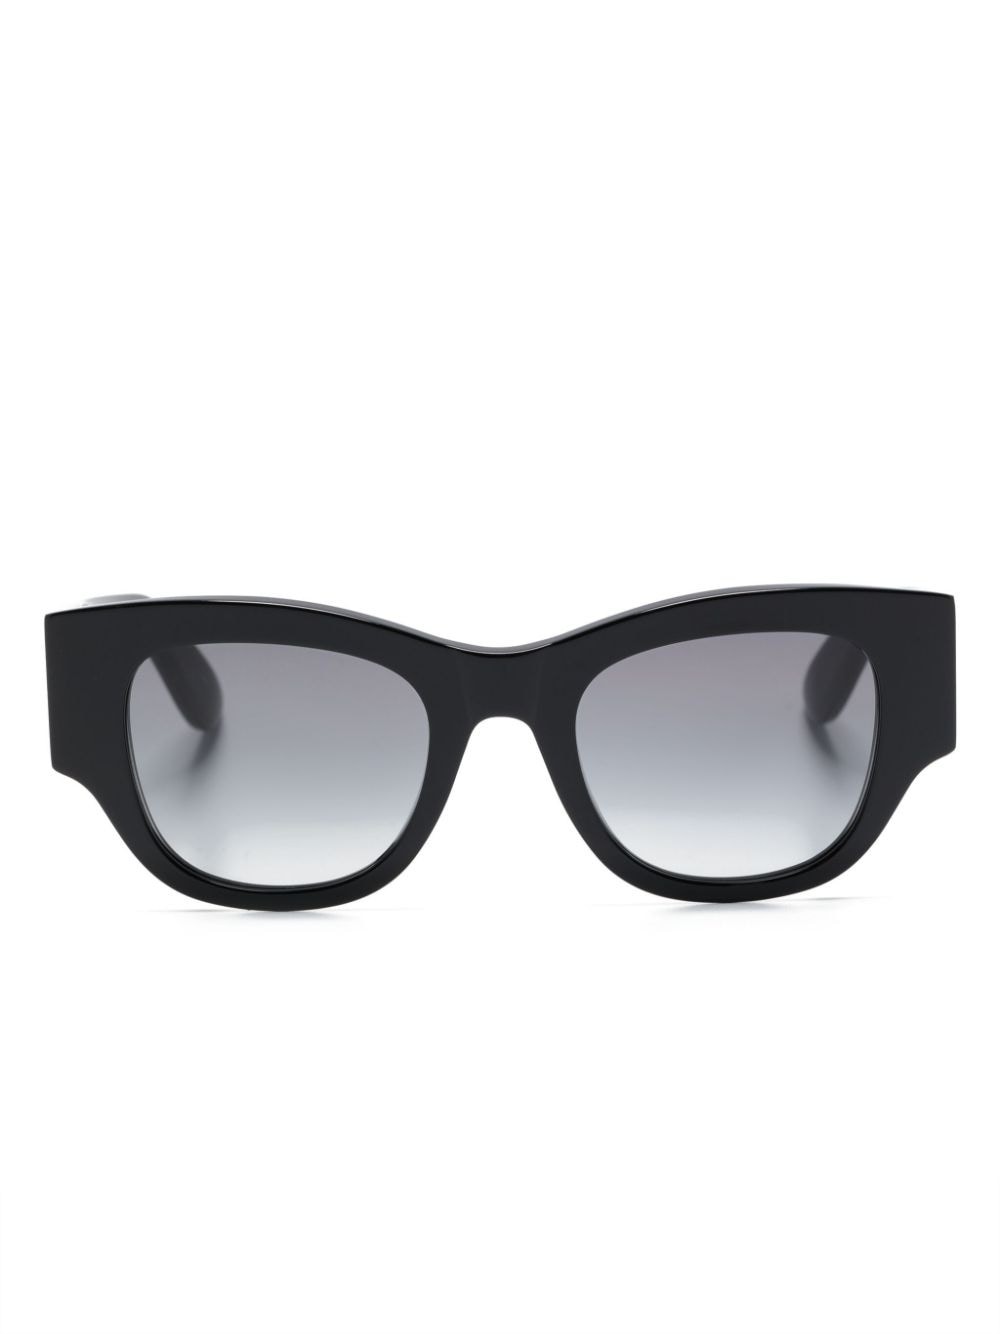 Alexander McQueen Eyewear Sonnenbrille mit breitem Gestell - Schwarz von Alexander McQueen Eyewear